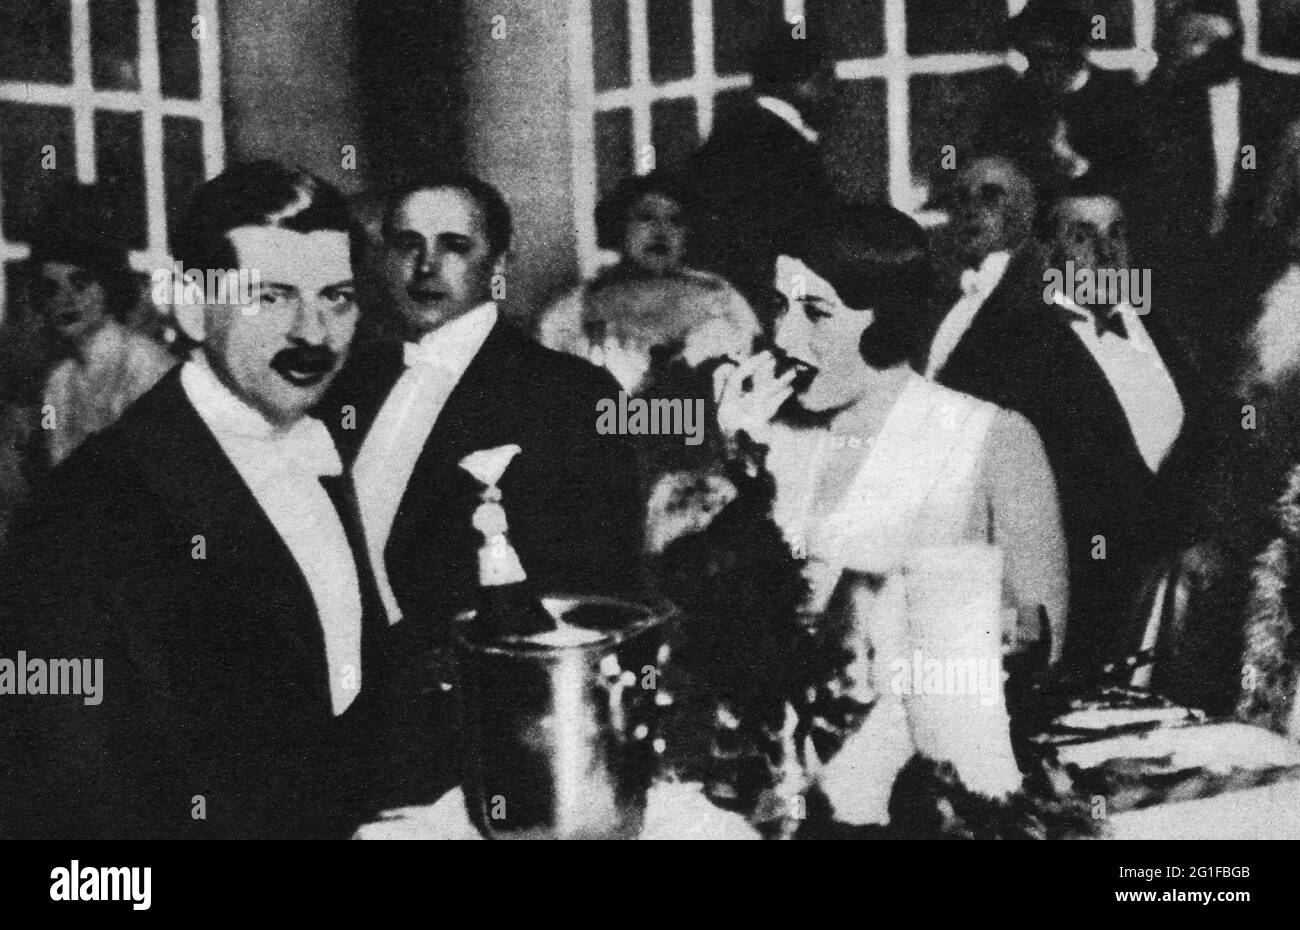 Carol II de Roumanie, 15.10.1893 - 4.4. 1953, Roi de Roumanie 8.6.1930 - 6.9.1940, demi-longueur, DROITS-SUPPLÉMENTAIRES-AUTORISATION-INFO-NON-DISPONIBLE Banque D'Images